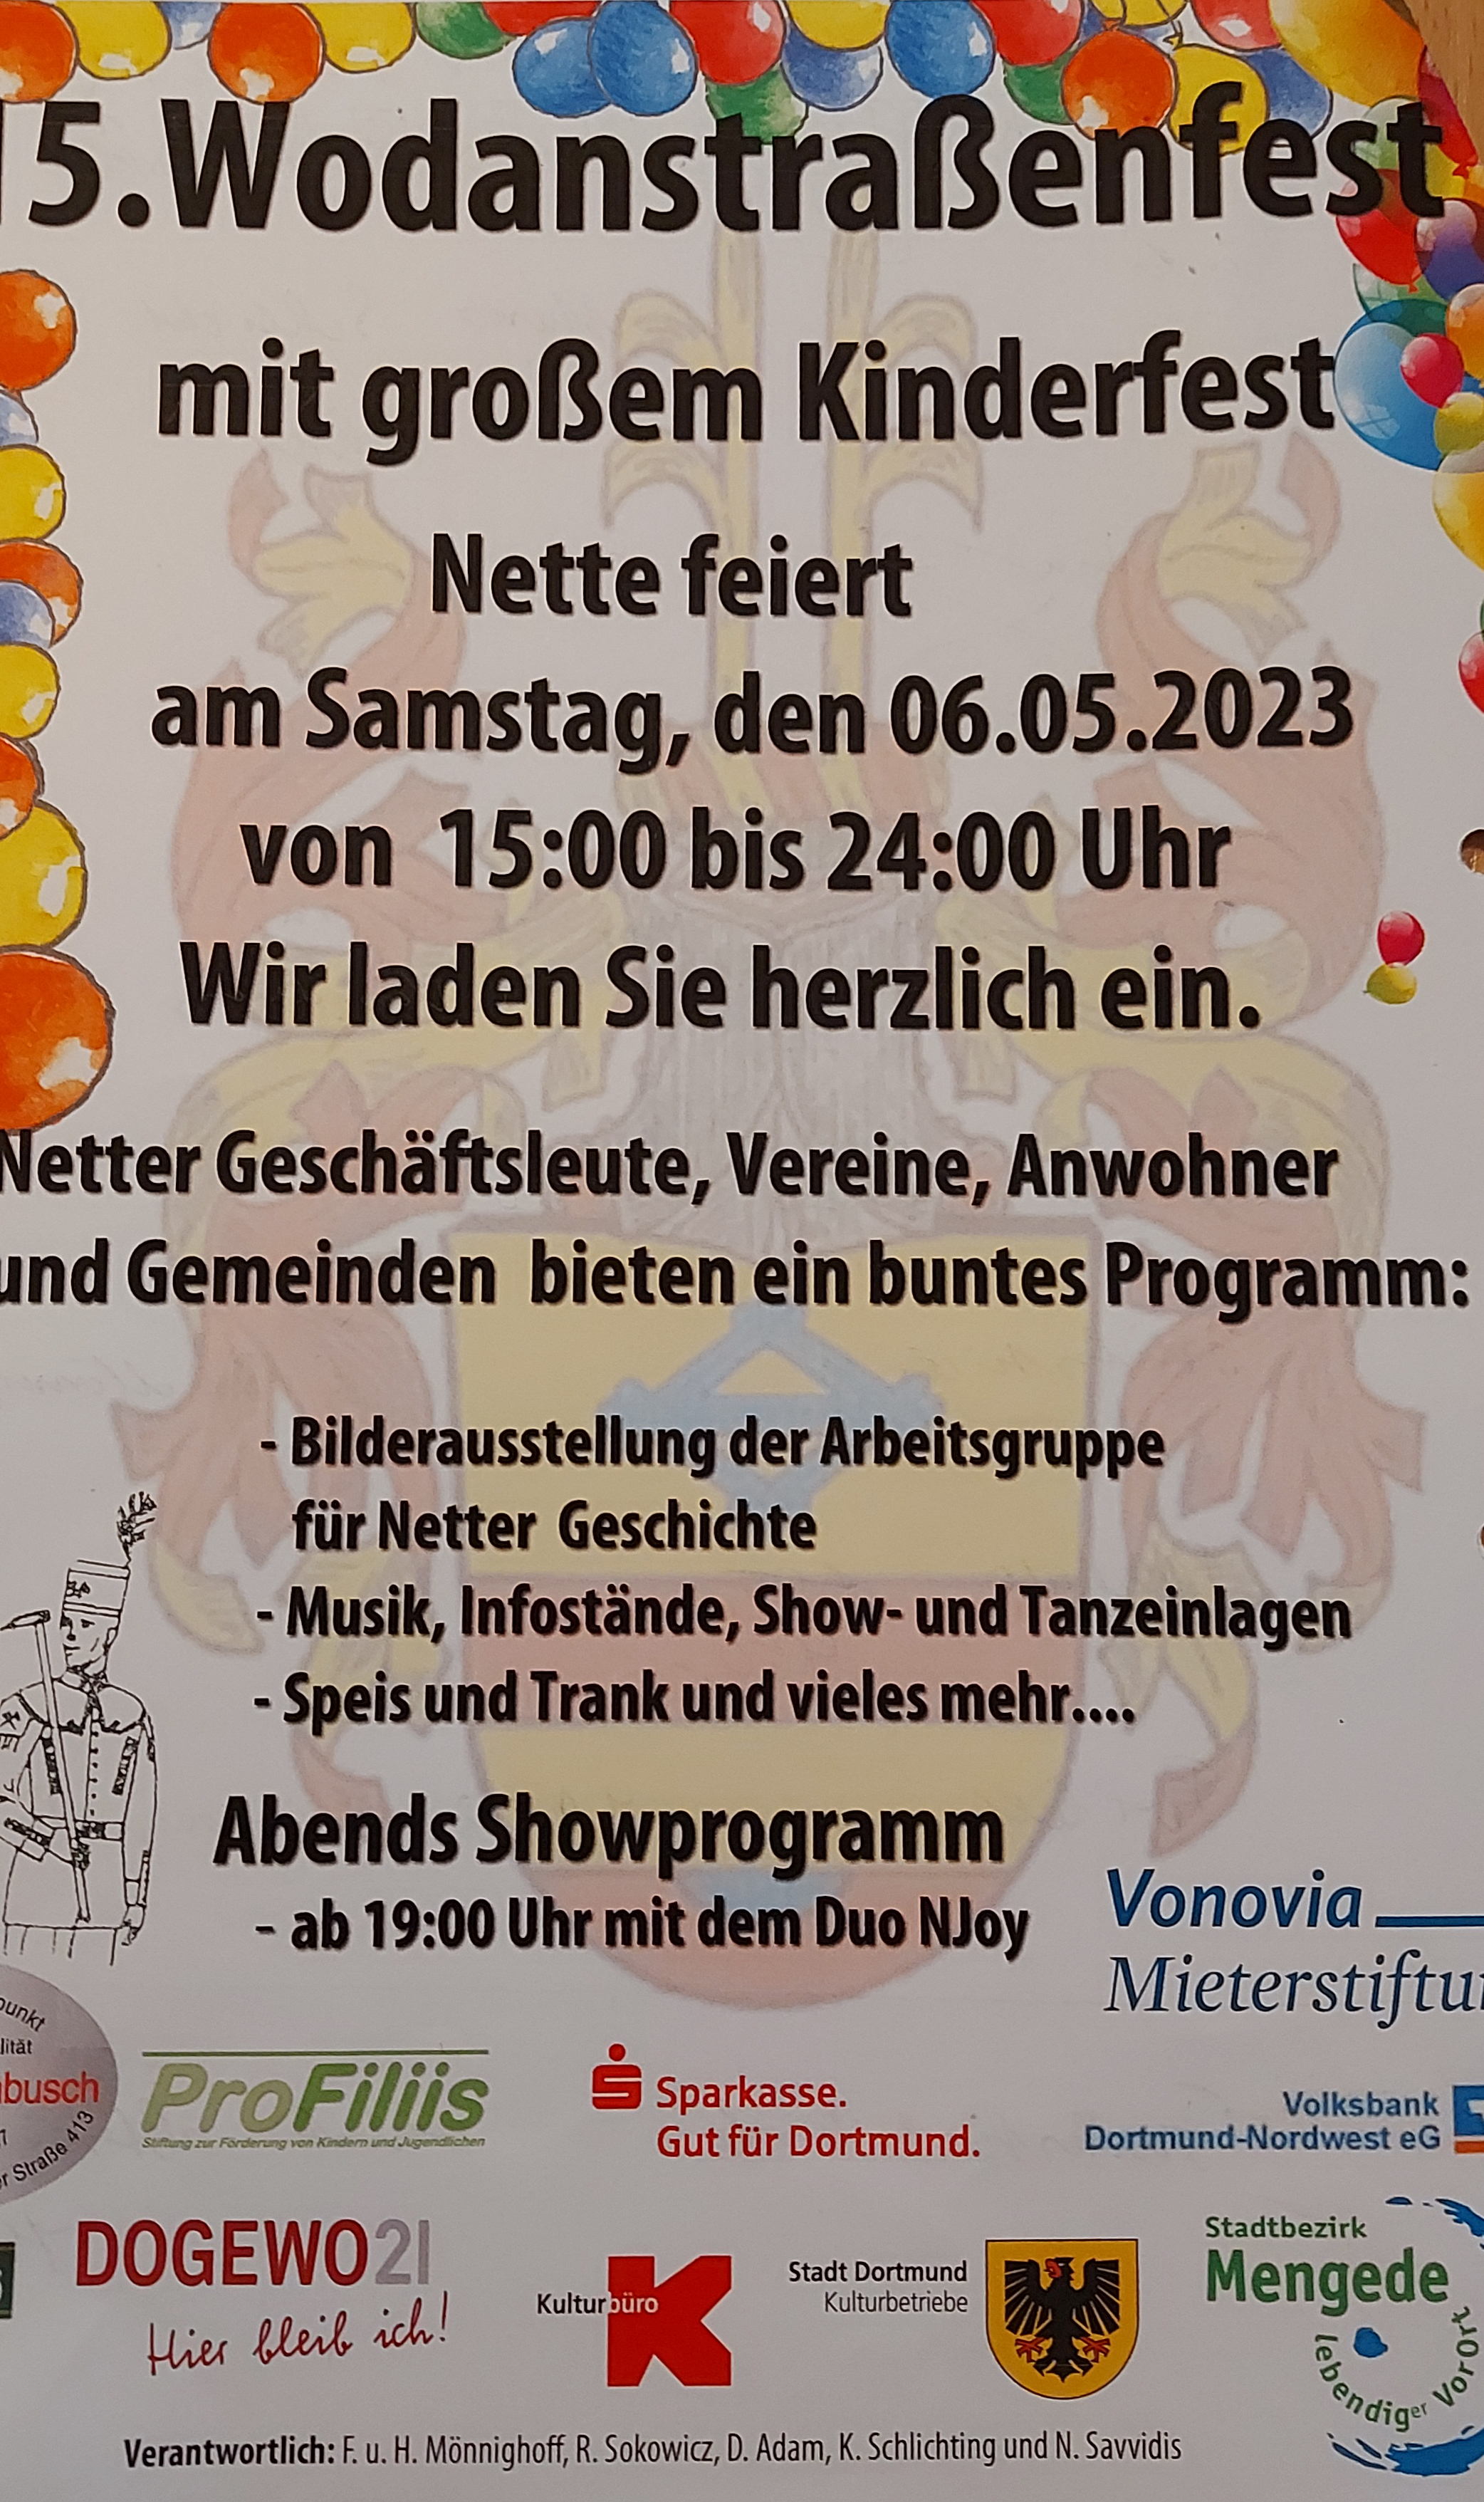 Plakat zum Wodanstraßenfest